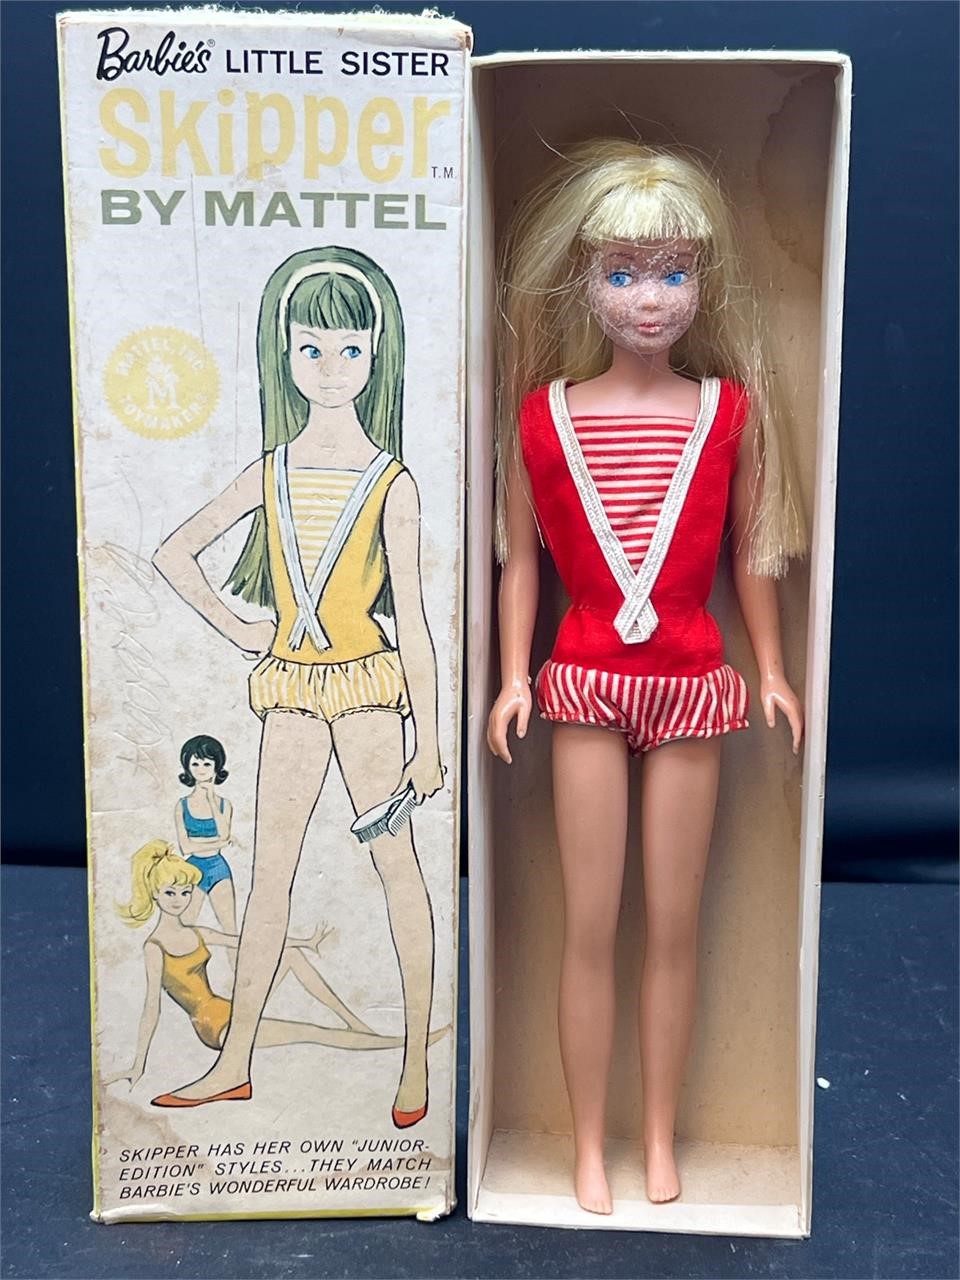 1963 Vtg Barbies little sister skipper by Mattel